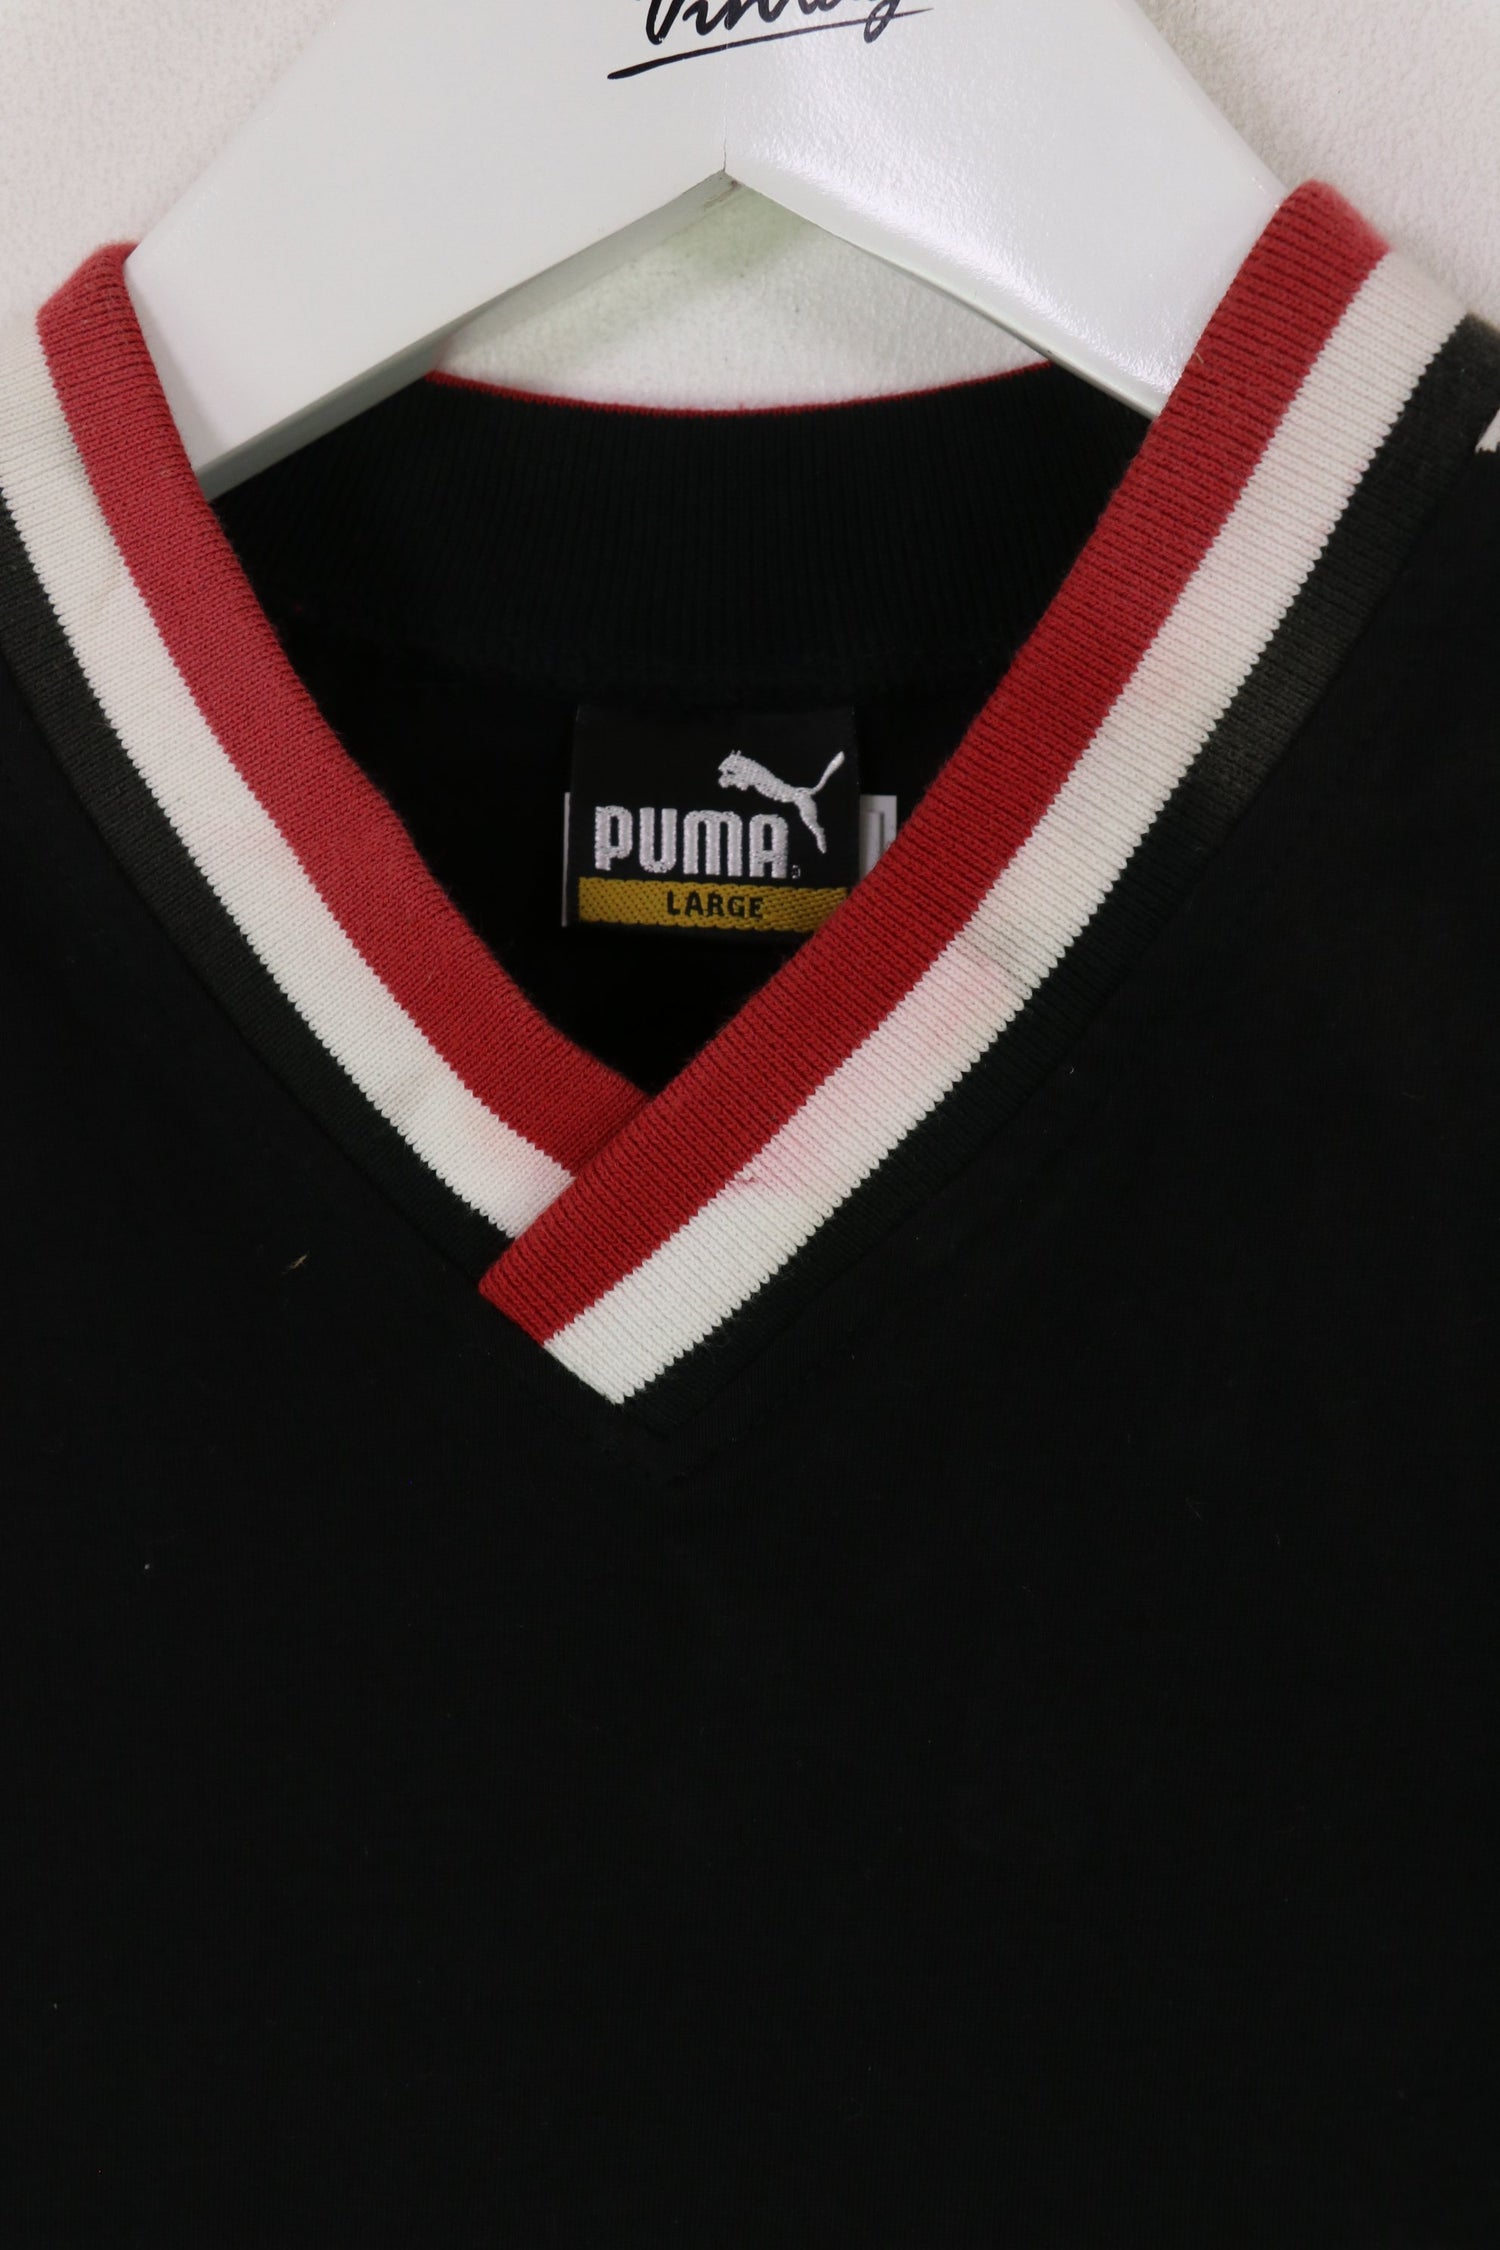 Puma King T-shirt Black/White XL